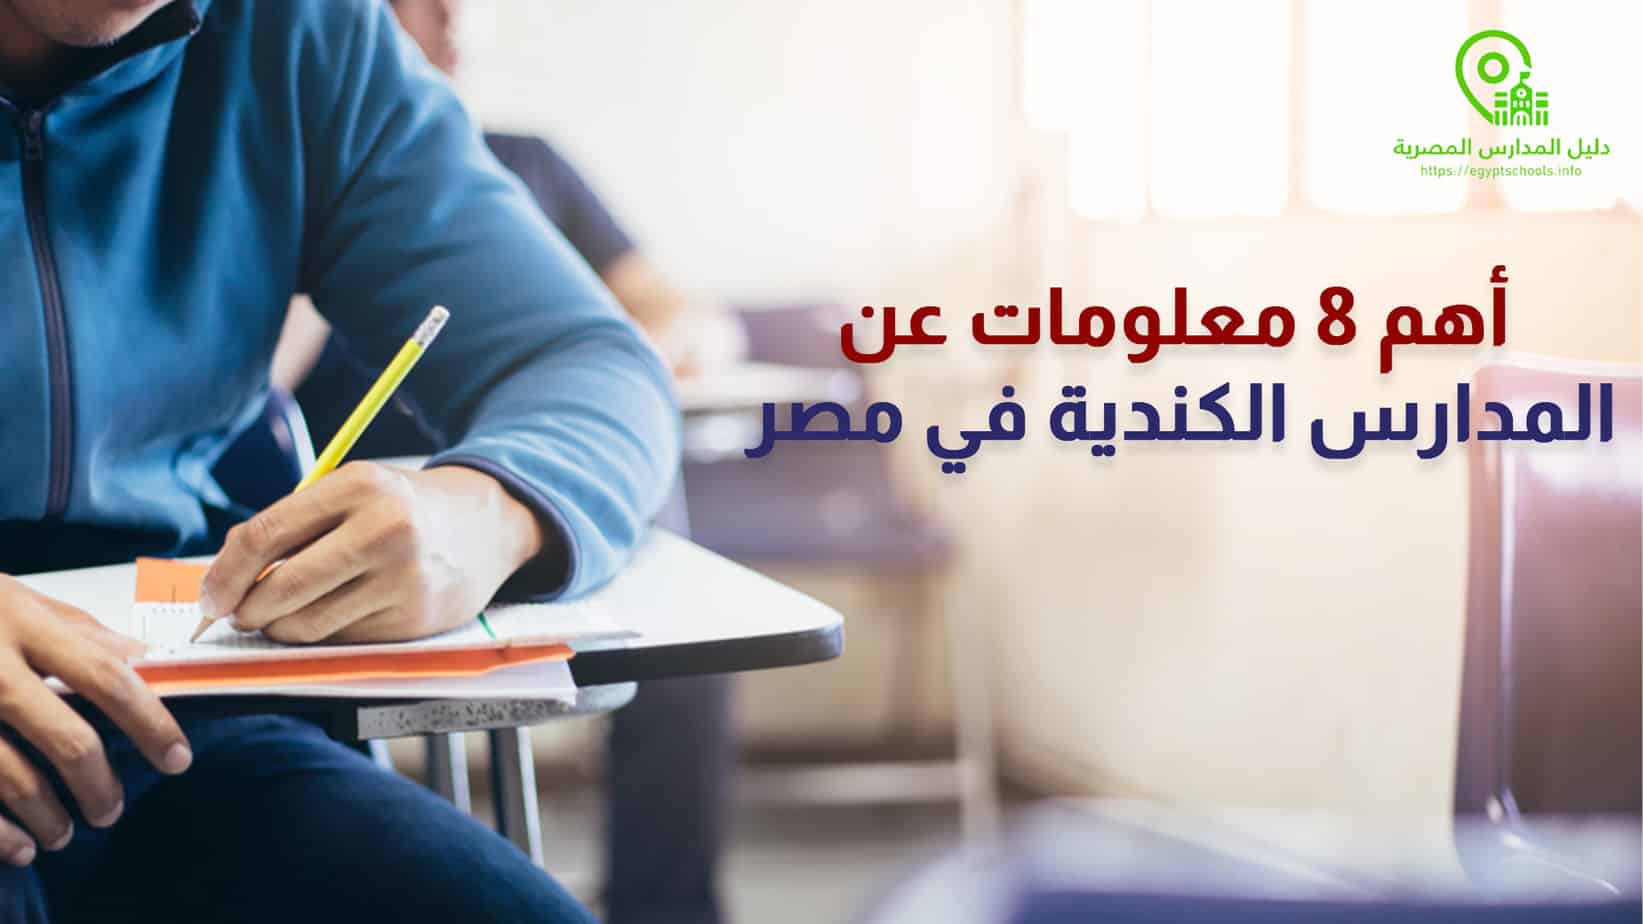 أهم 8 معلومات عن المدارس الكندية في مصر 2021 المزيد على موقع دليل المدارس المصرية: أهم 8 معلومات عن المدارس الكندية في مصر 2021